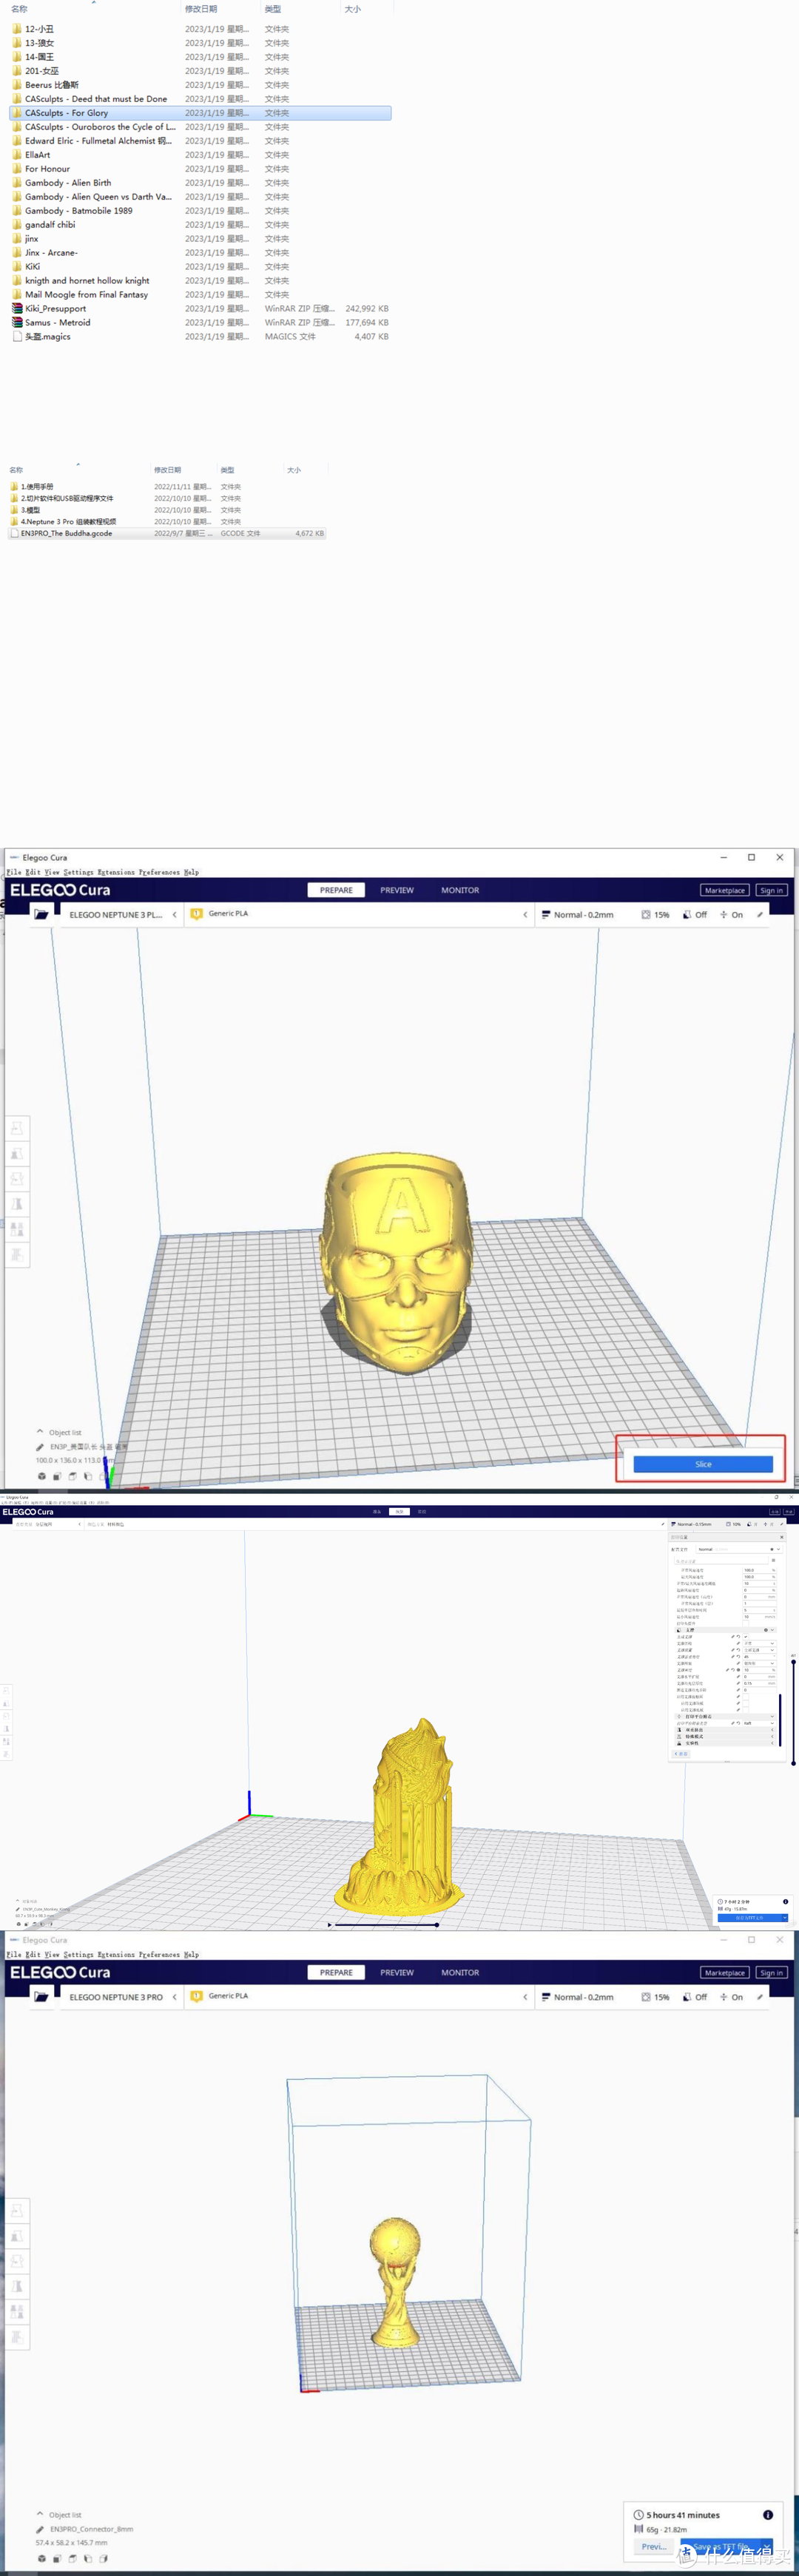 NEPTUNE 3 Pro3D打印机：千元玩具摔坏心疼，3D打印玩具省千元